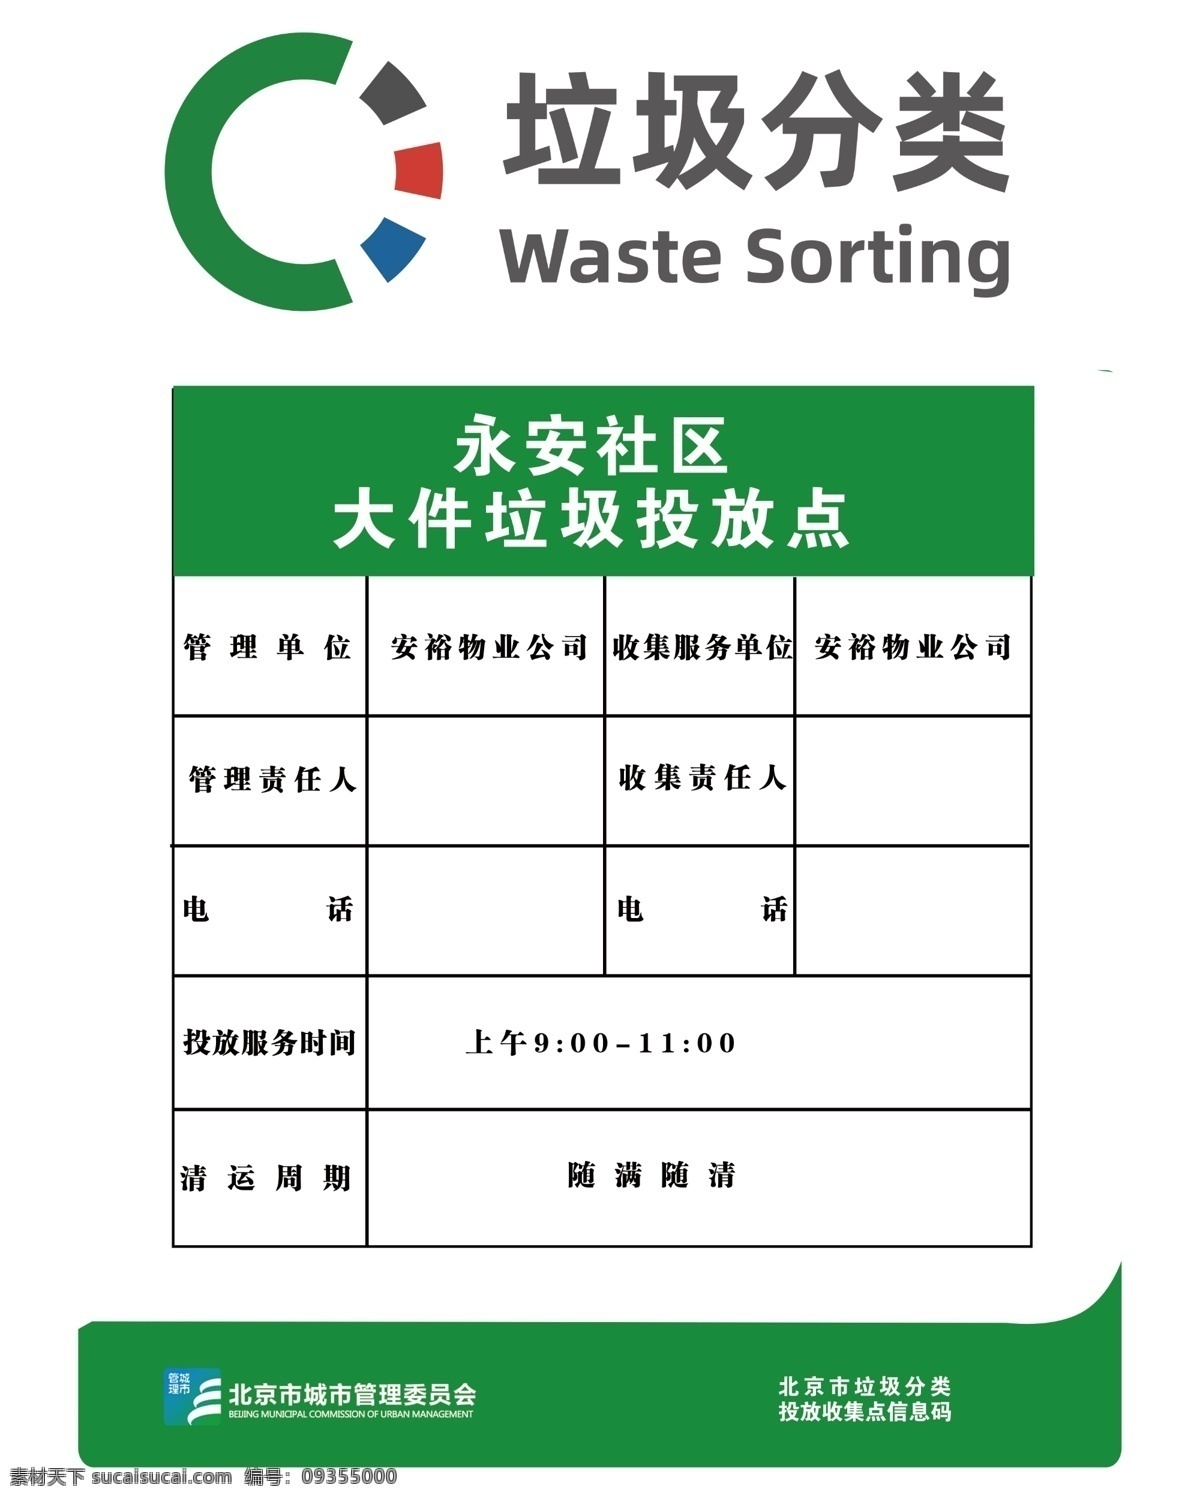 垃圾分类 垃圾 分类 北京 大件垃圾 堆放处 2020 分层